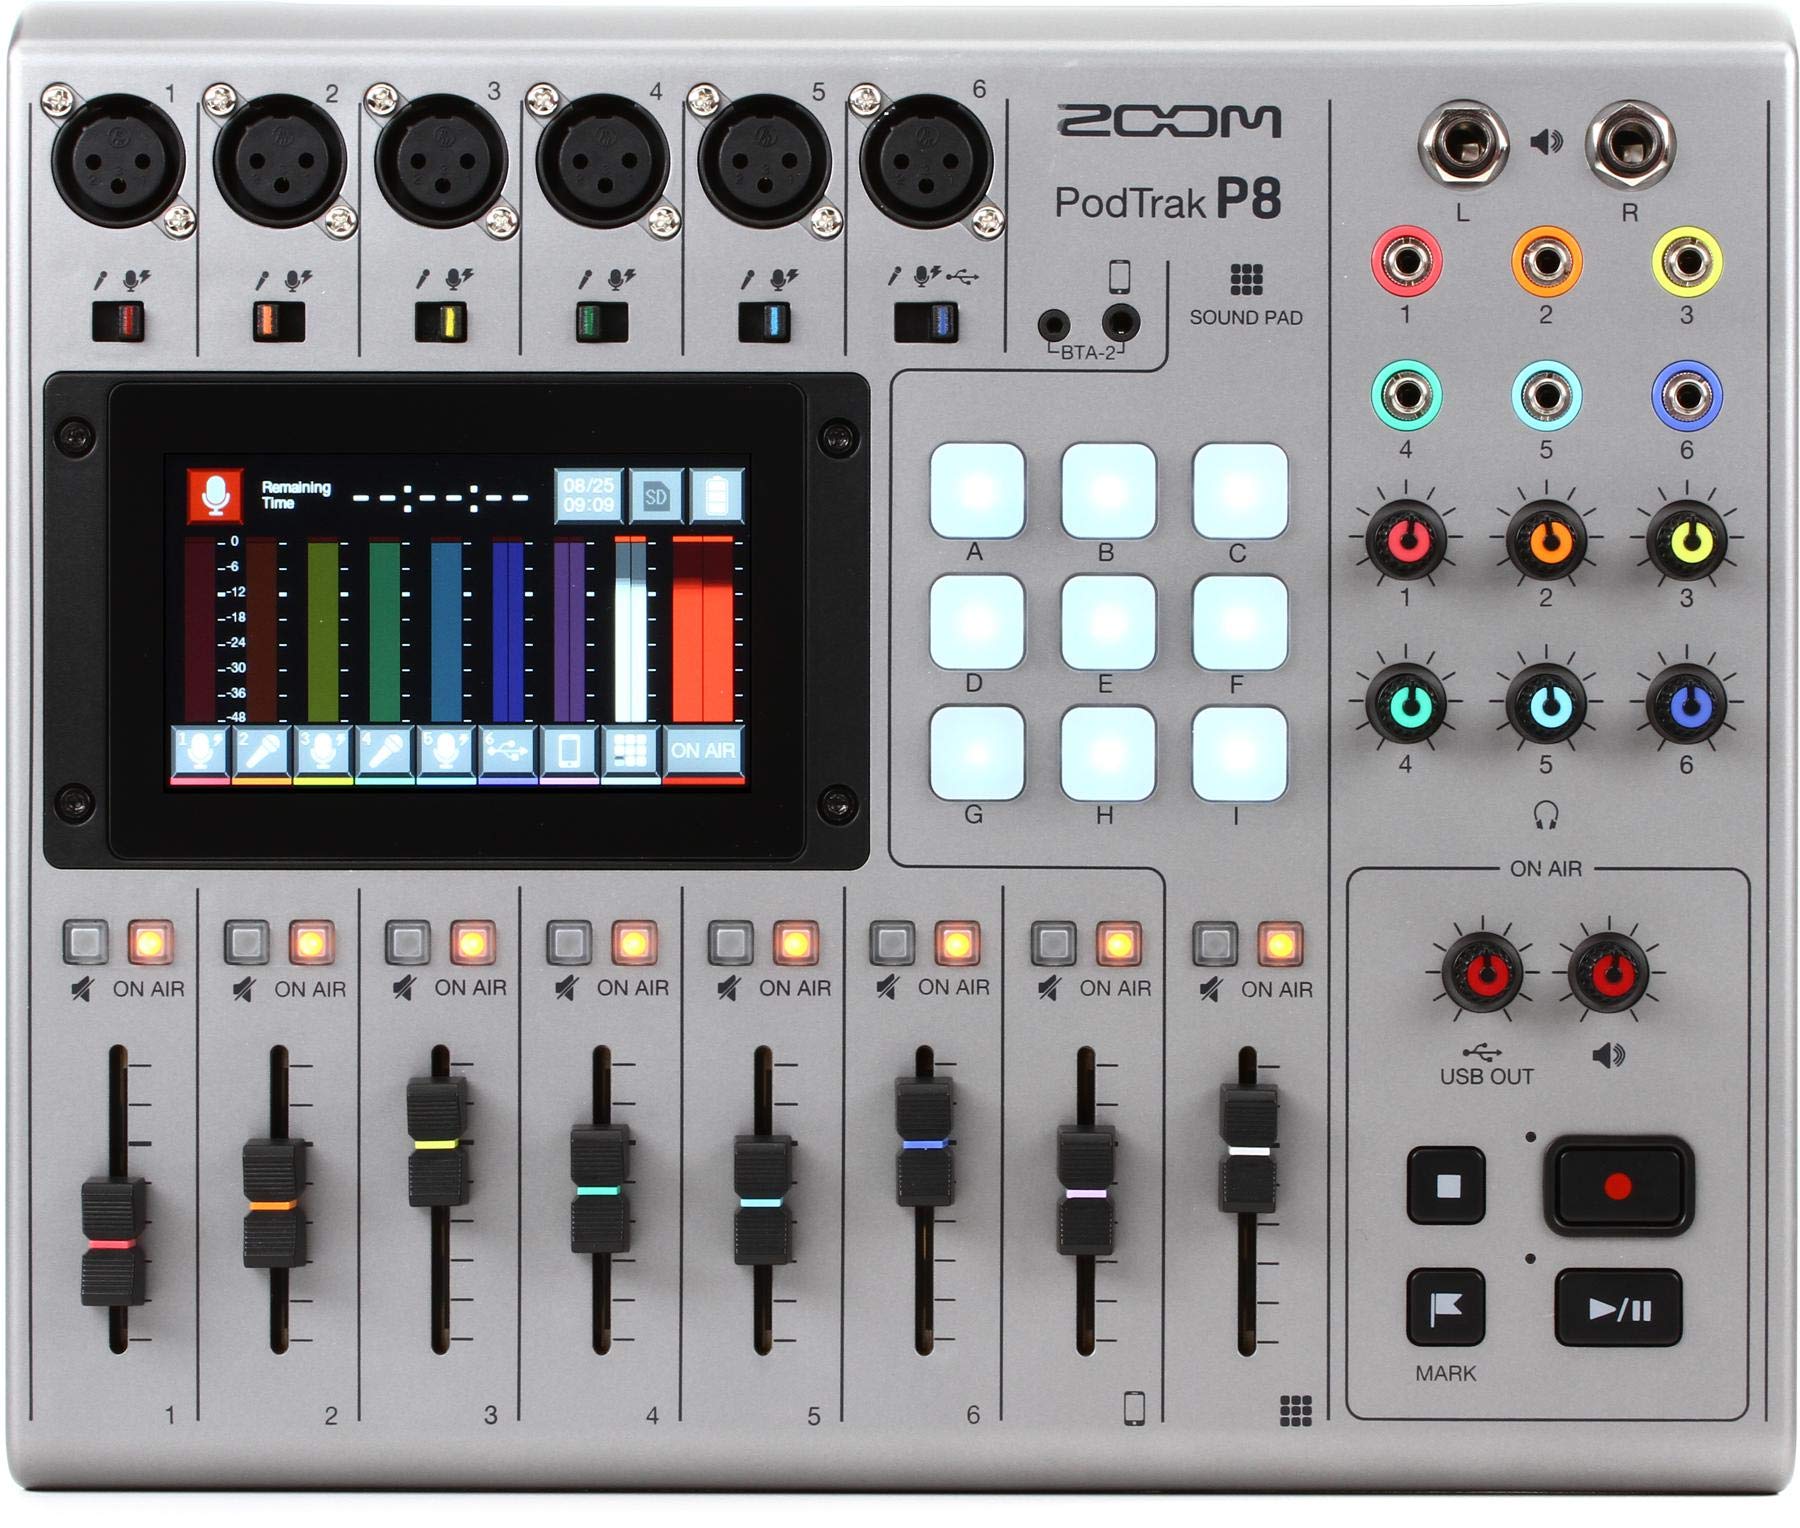  Zoom PodTrak P8 ポッドキャスト レコーダー、6 マイク入力、6 ヘッドフォン出力、電話入力、サウンドパッド、オンボード編集、SD カードへの録音、USB...